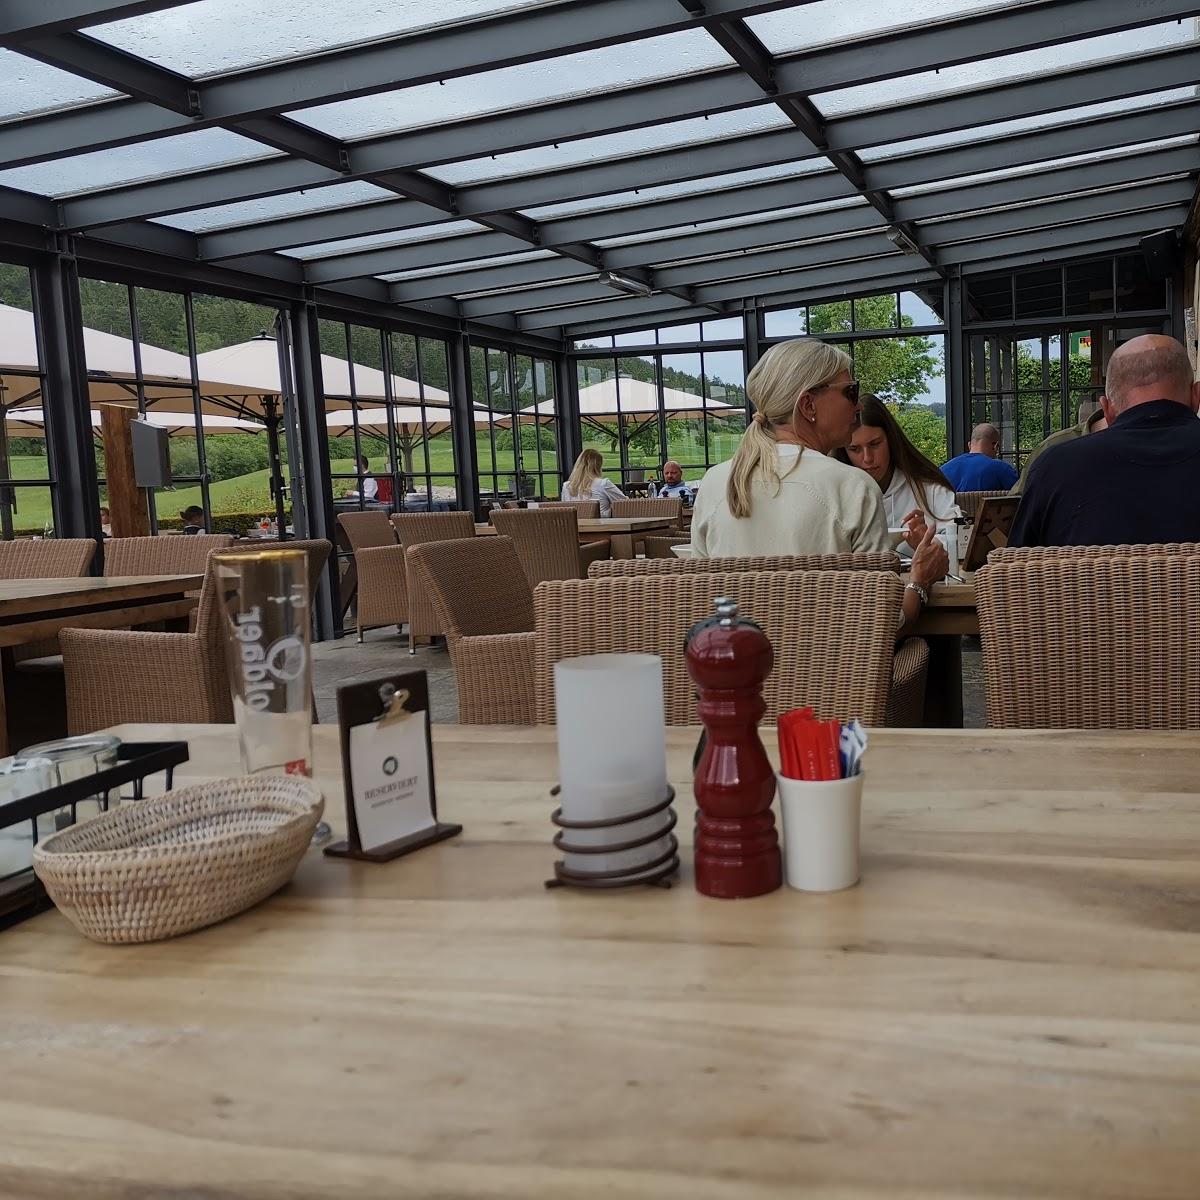 Restaurant "Restaurant im Golf Resort" in Blankenhain